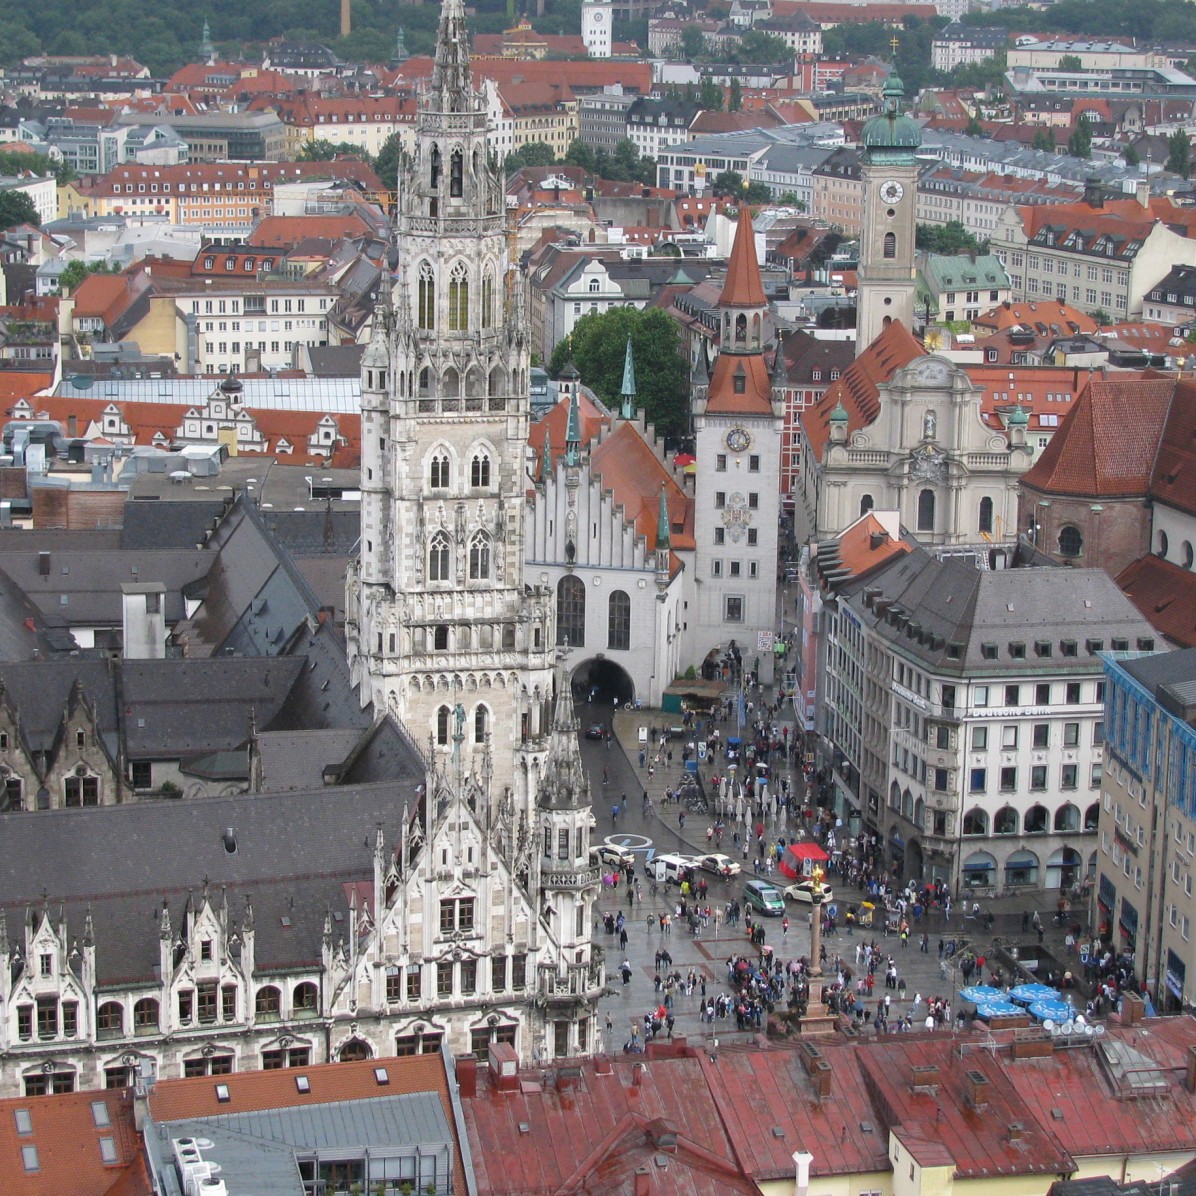 Marienplatz - a view from Frauenkirche belltower